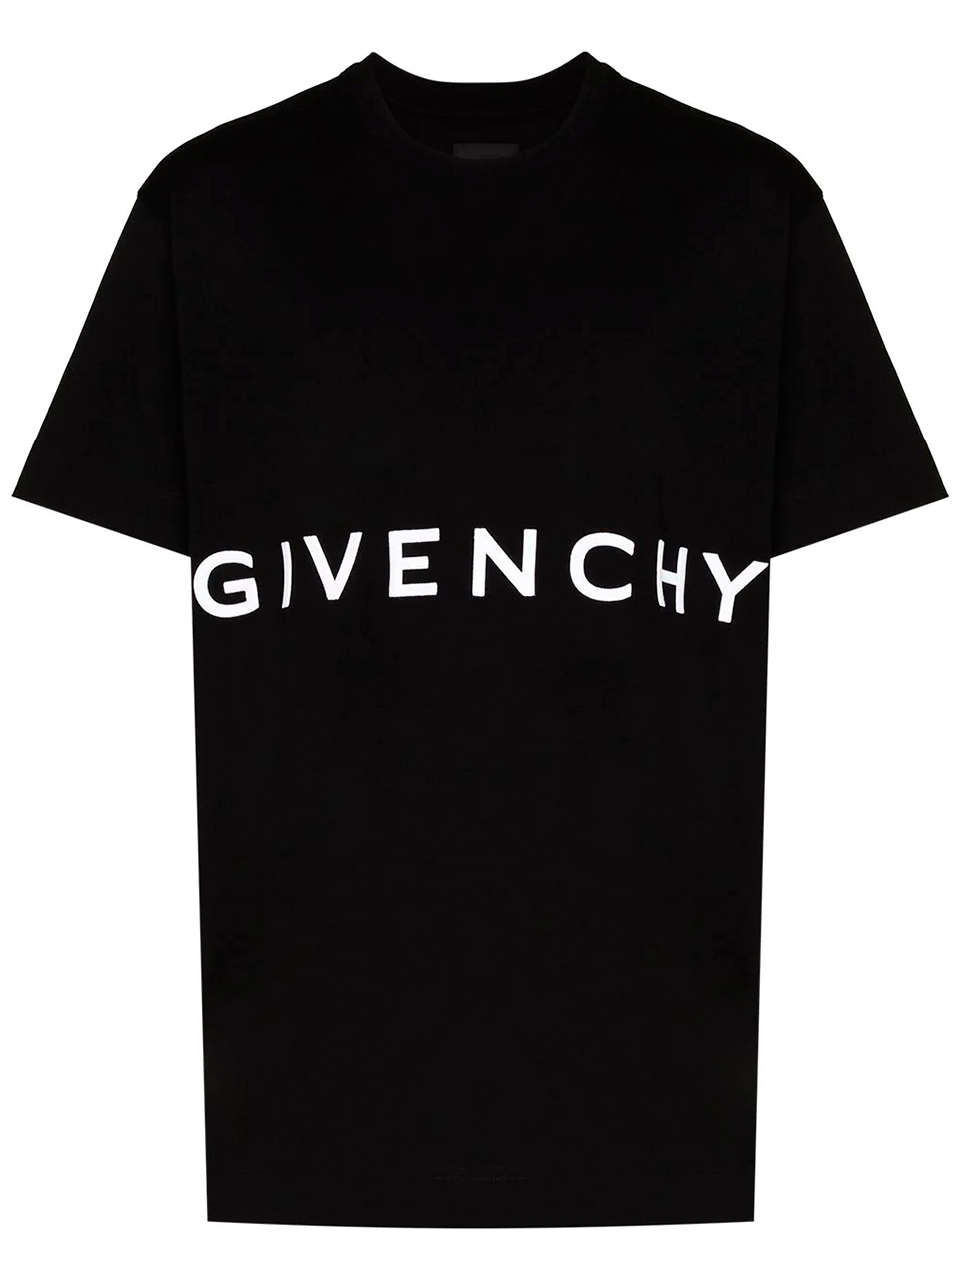 Imagem de: Camiseta Givenchy Preta com Logo Branco